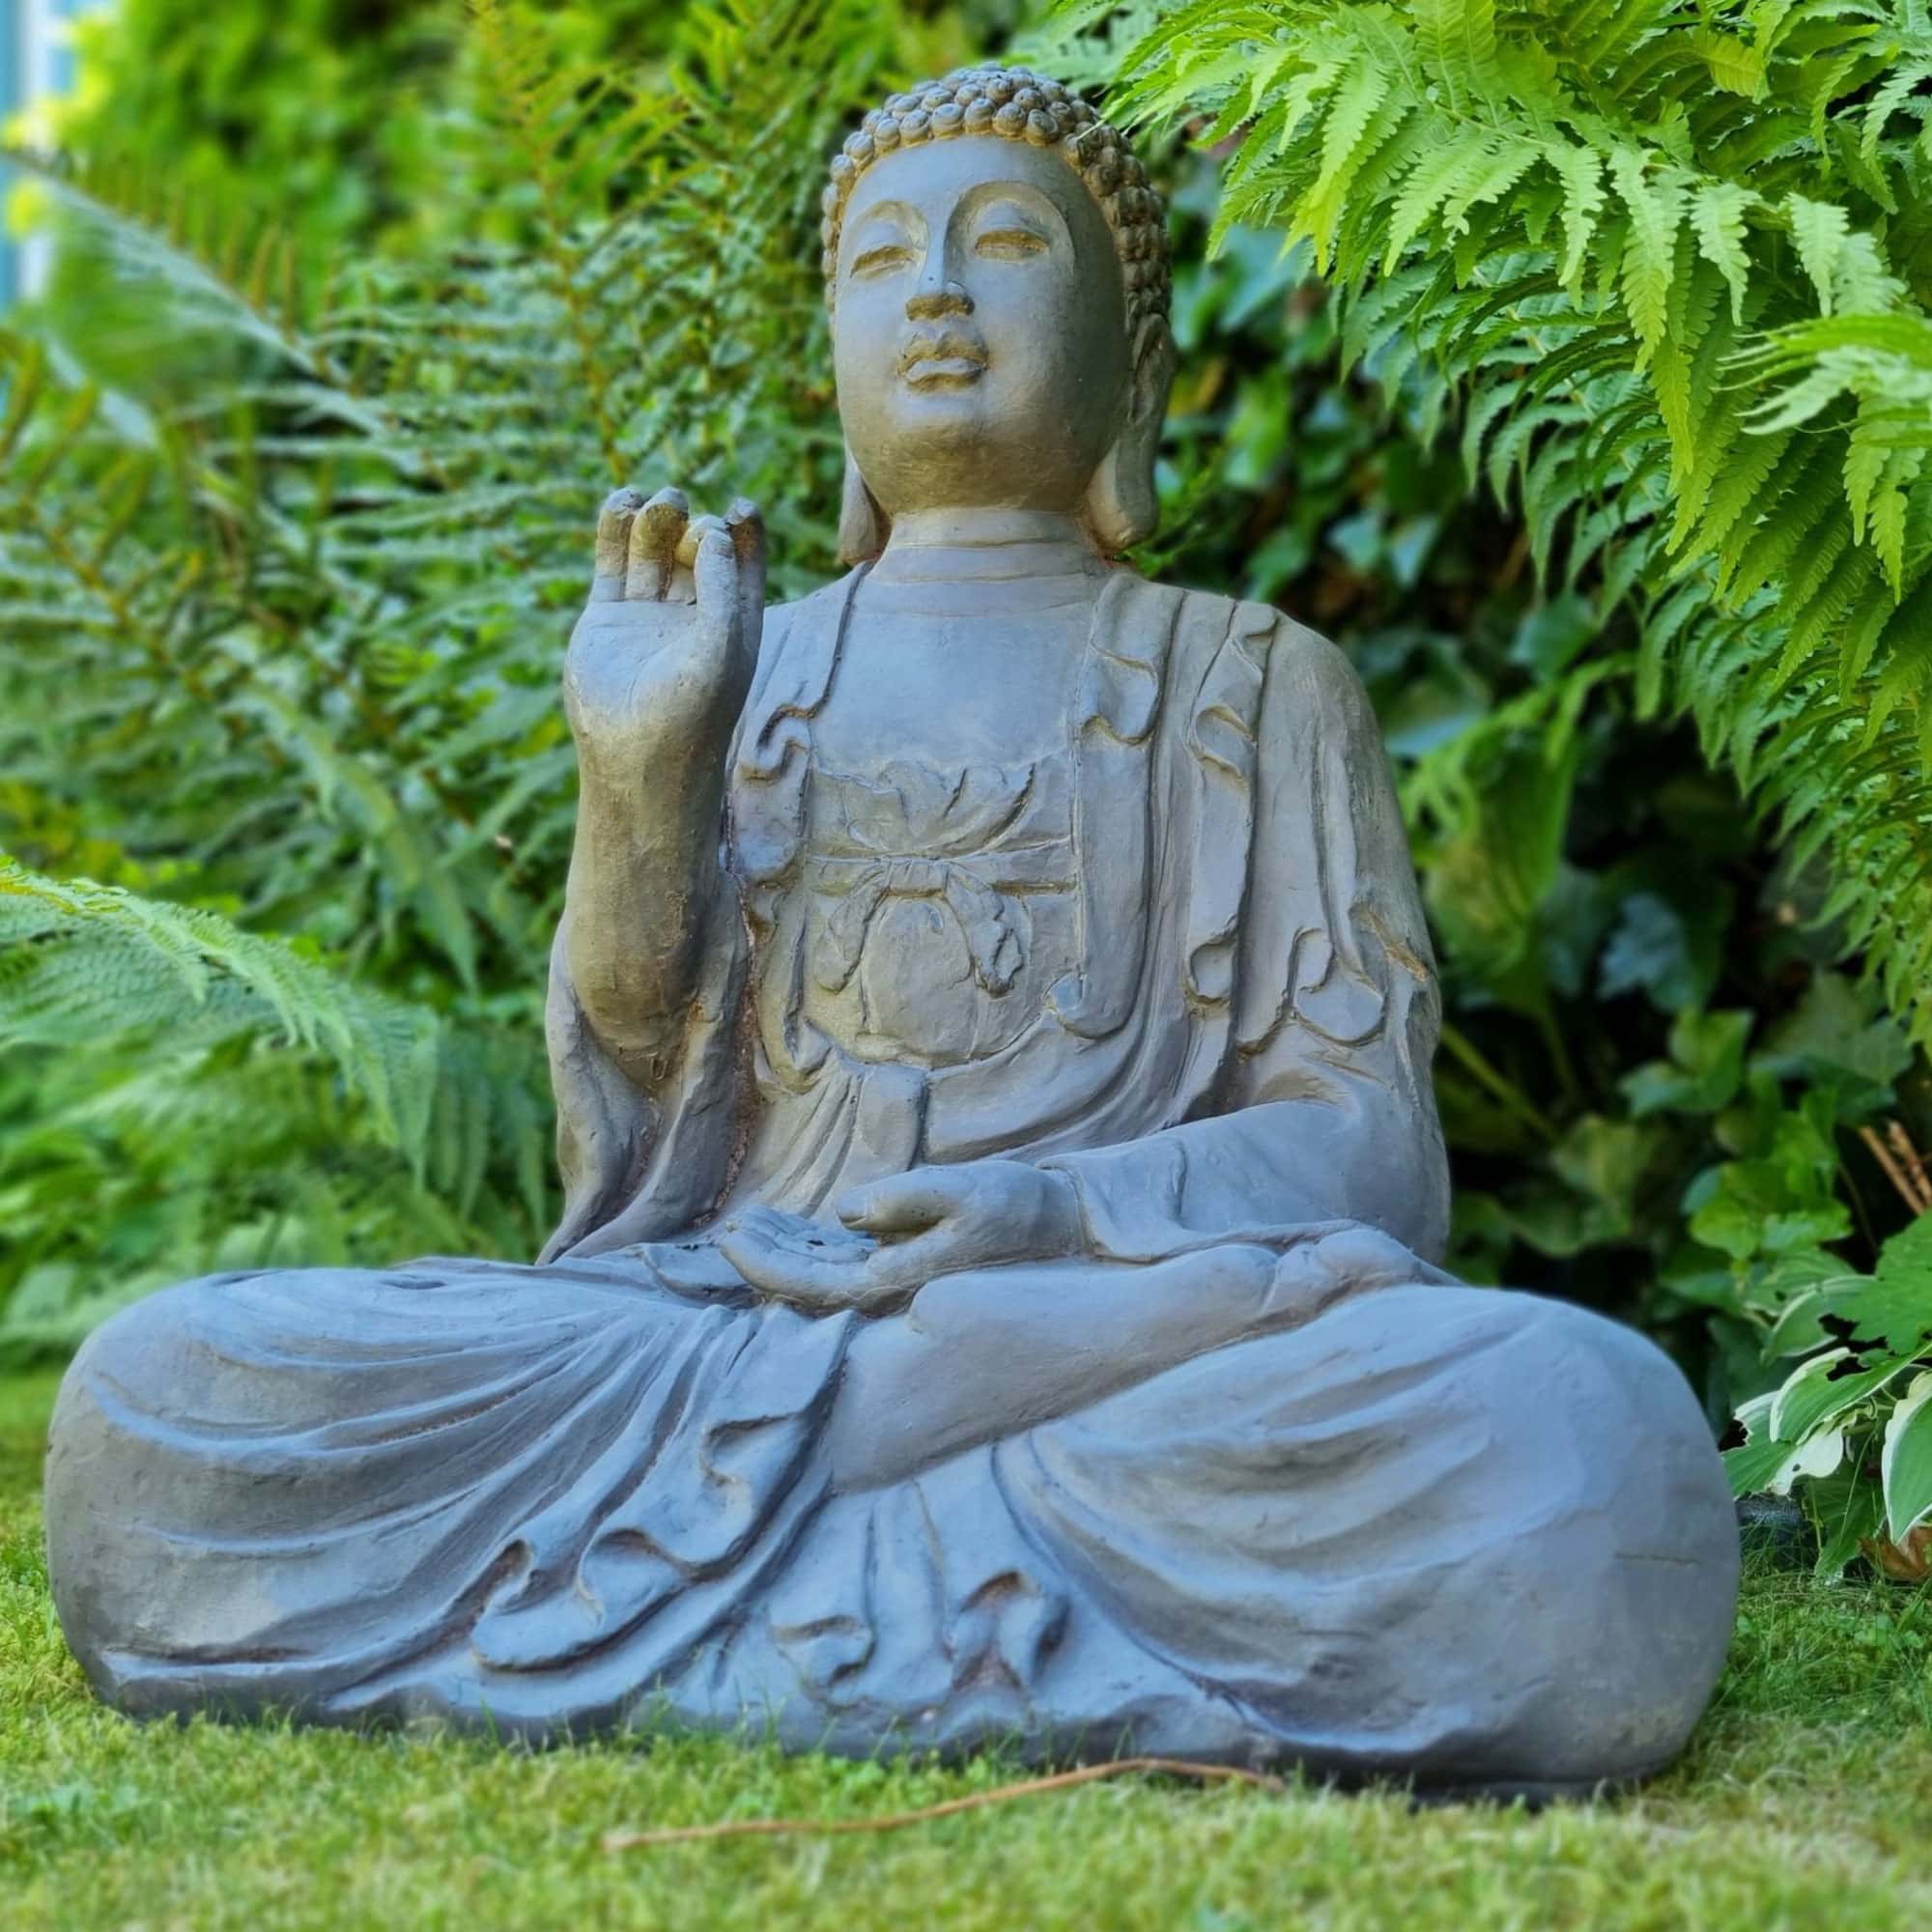 Statuette de Bouddha